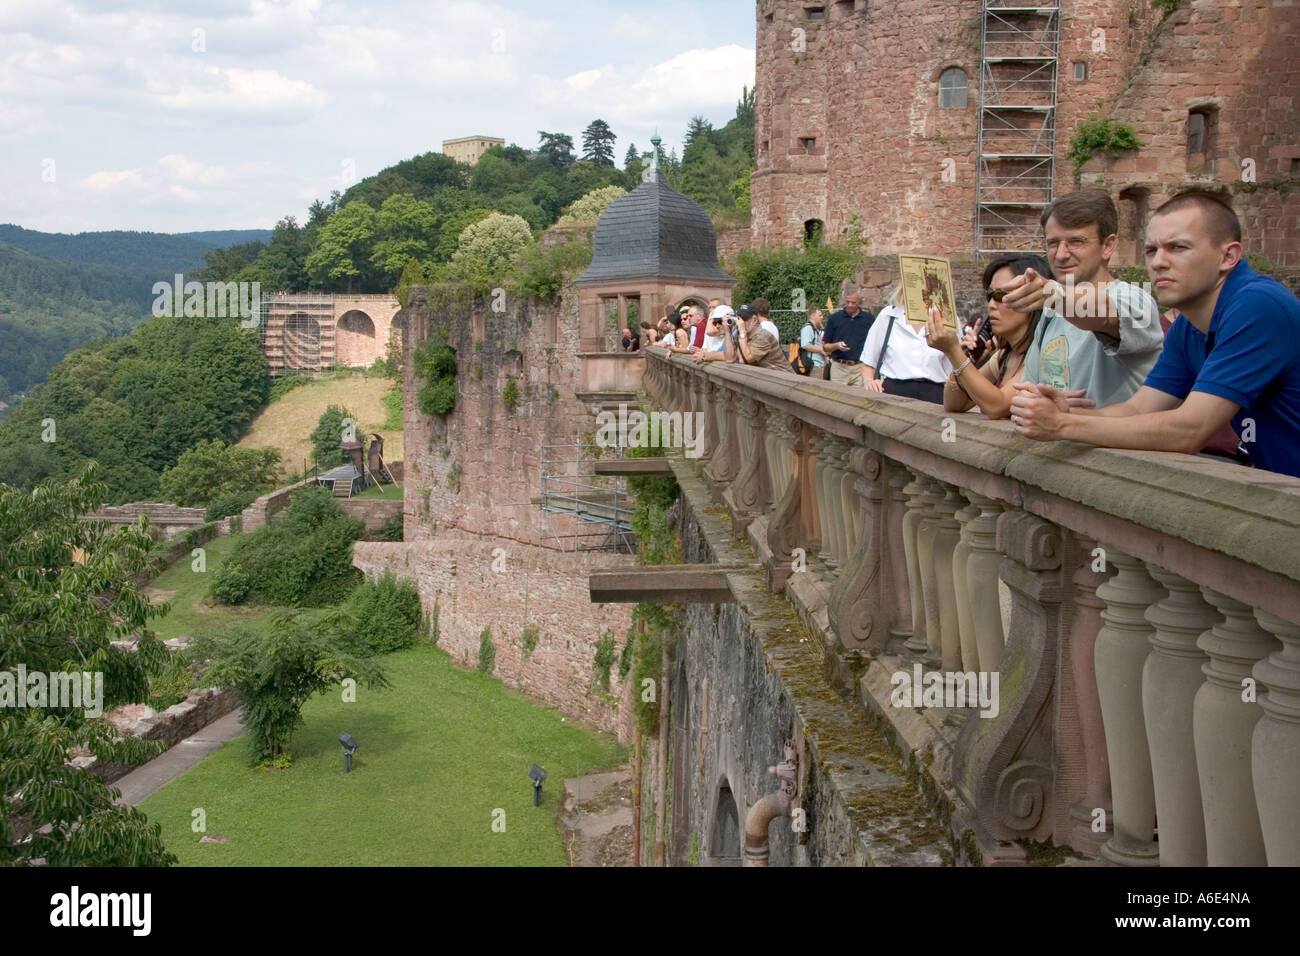 14.07.2005, Heidelberg, DEU, Japanese and American visitors in the Heidelberg Castle Stock Photo